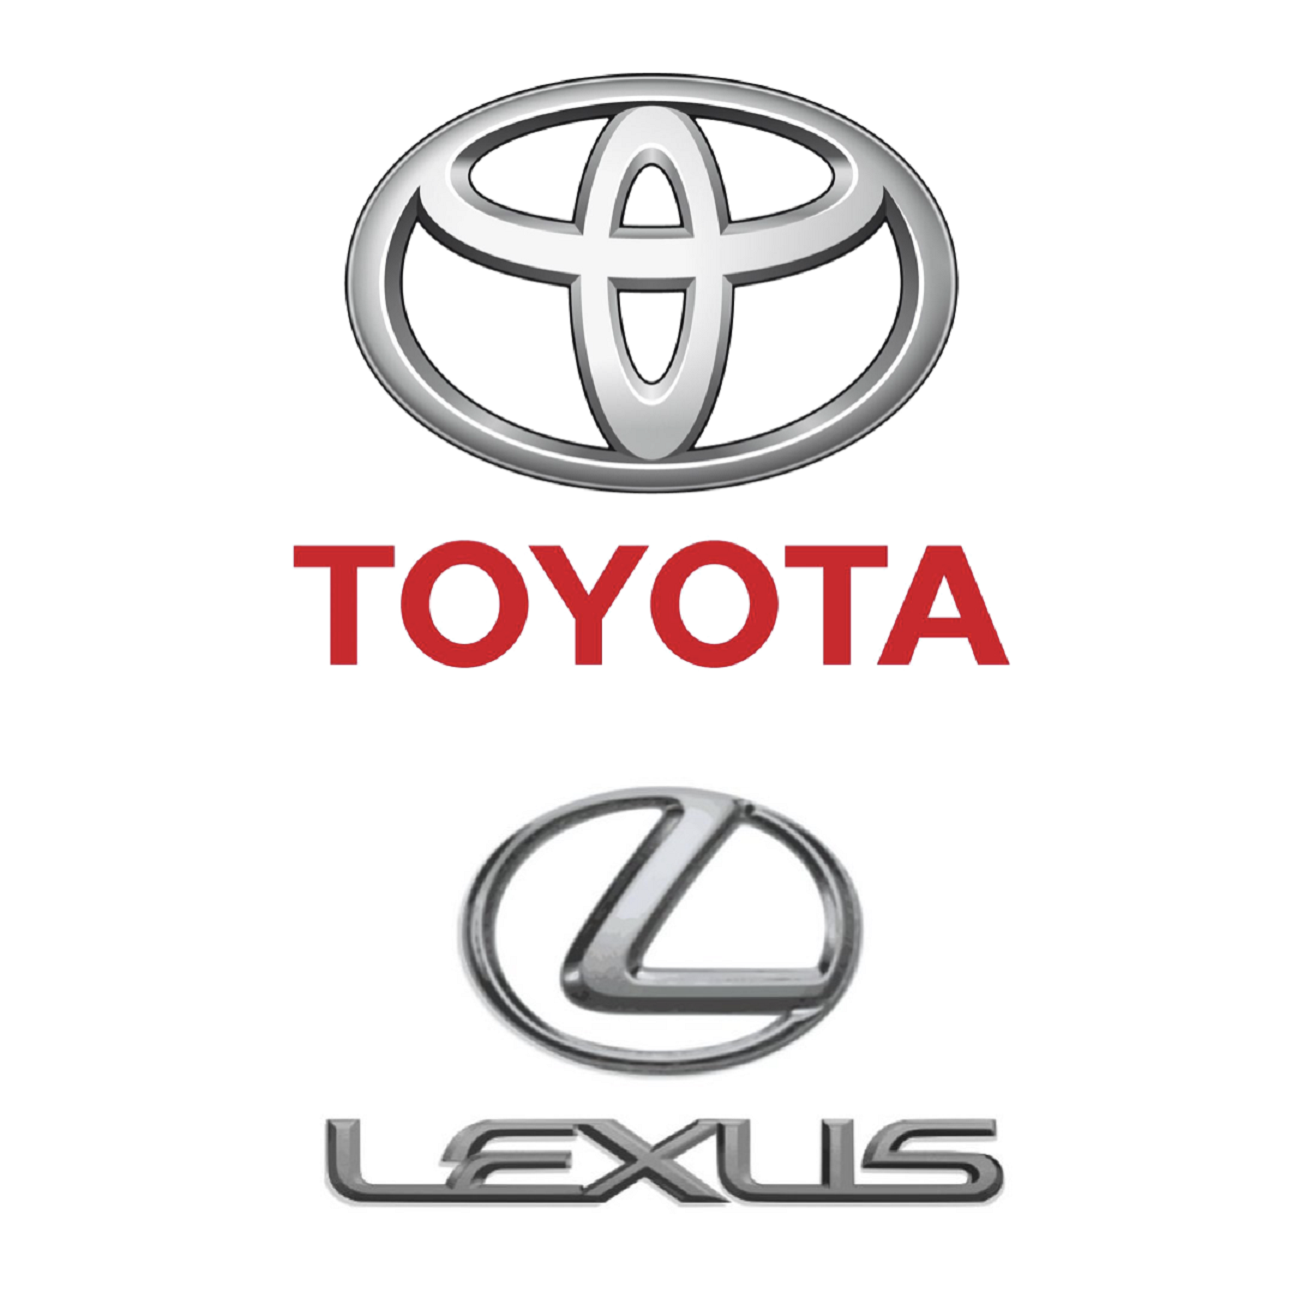 Toyota e Lexus